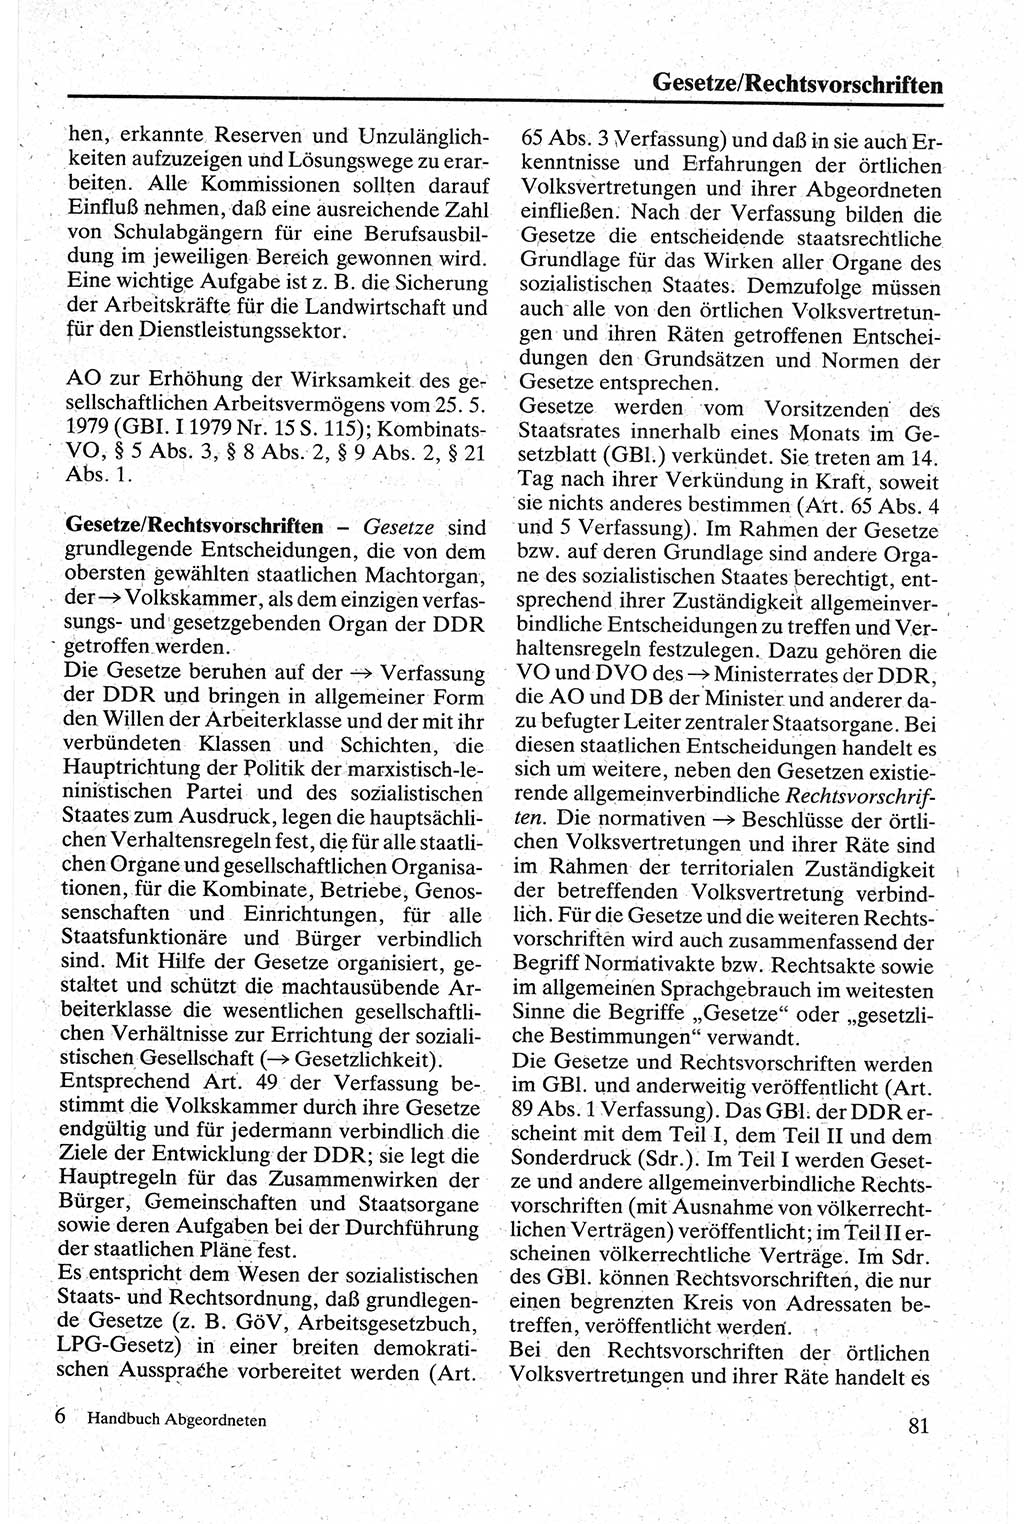 Handbuch für den Abgeordneten [Deutsche Demokratische Republik (DDR)] 1984, Seite 81 (Hb. Abg. DDR 1984, S. 81)